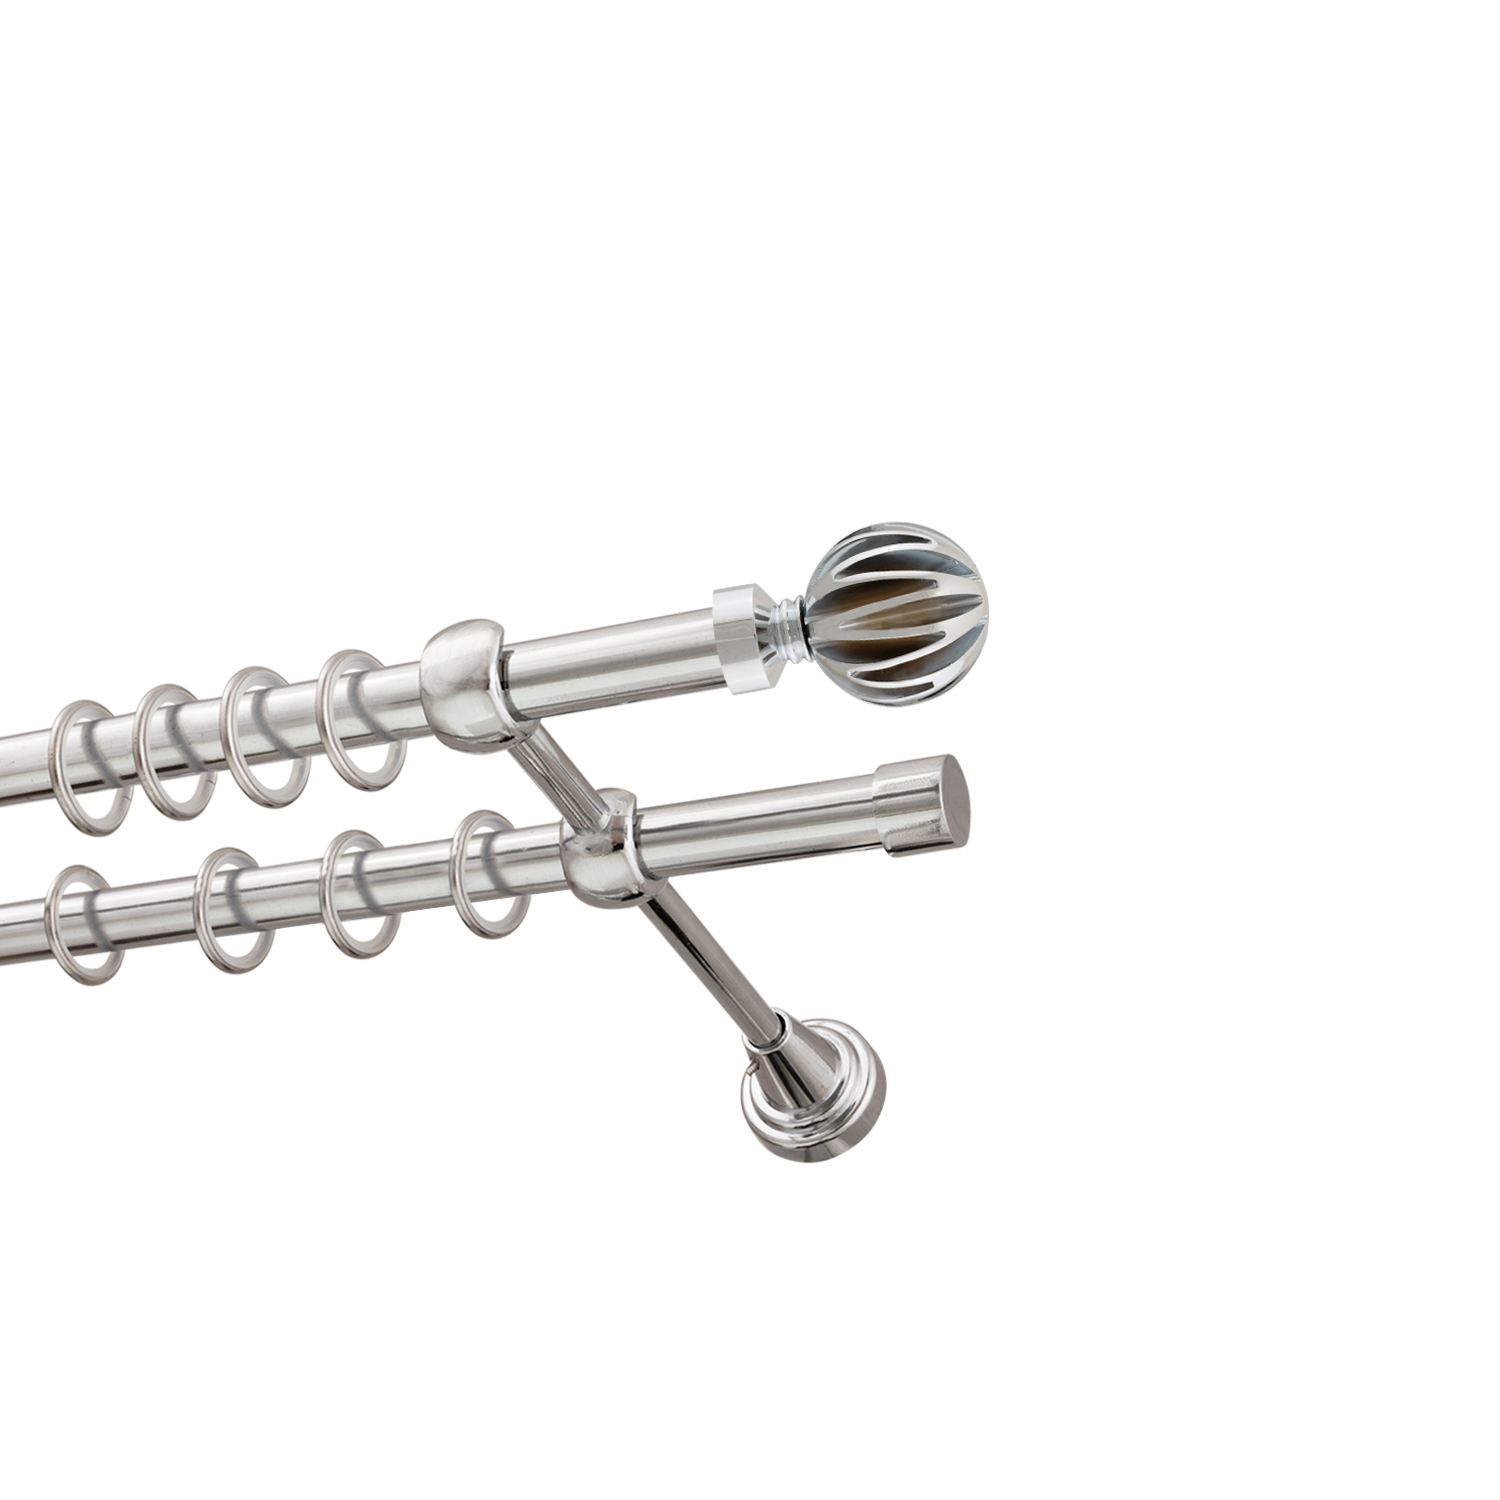 Металлический карниз для штор Шафран, двухрядный 16/16 мм, серебро, гладкая штанга, длина 180 см